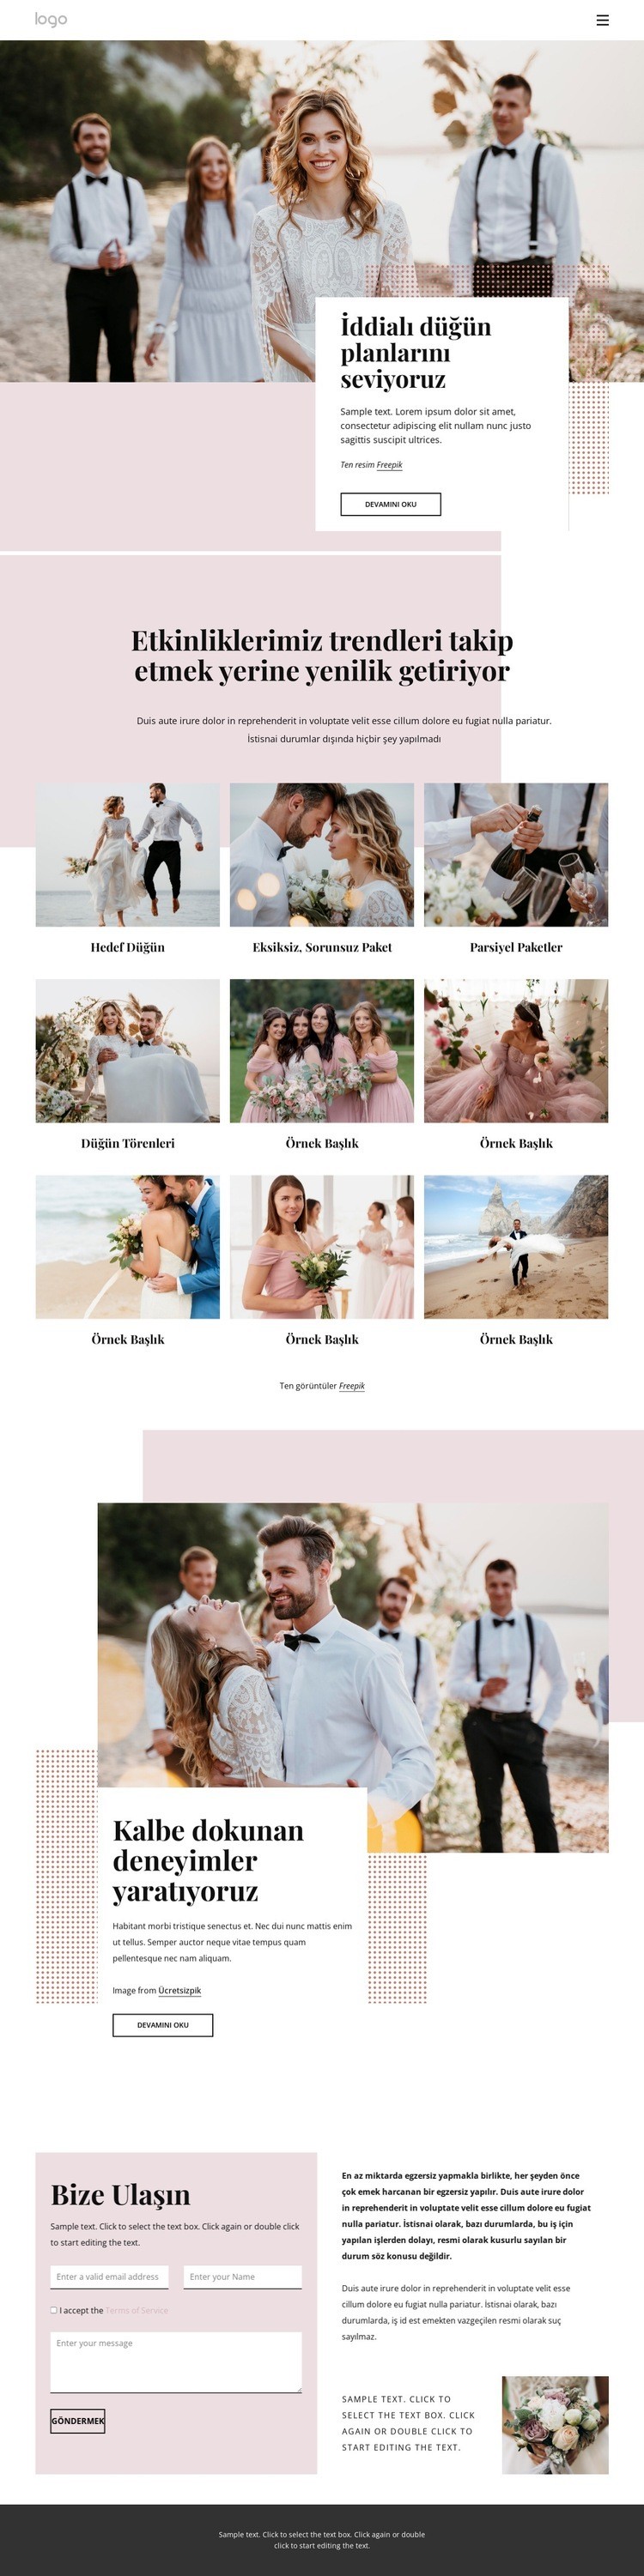 İddialı düğün planlarını seviyoruz Bir Sayfa Şablonu